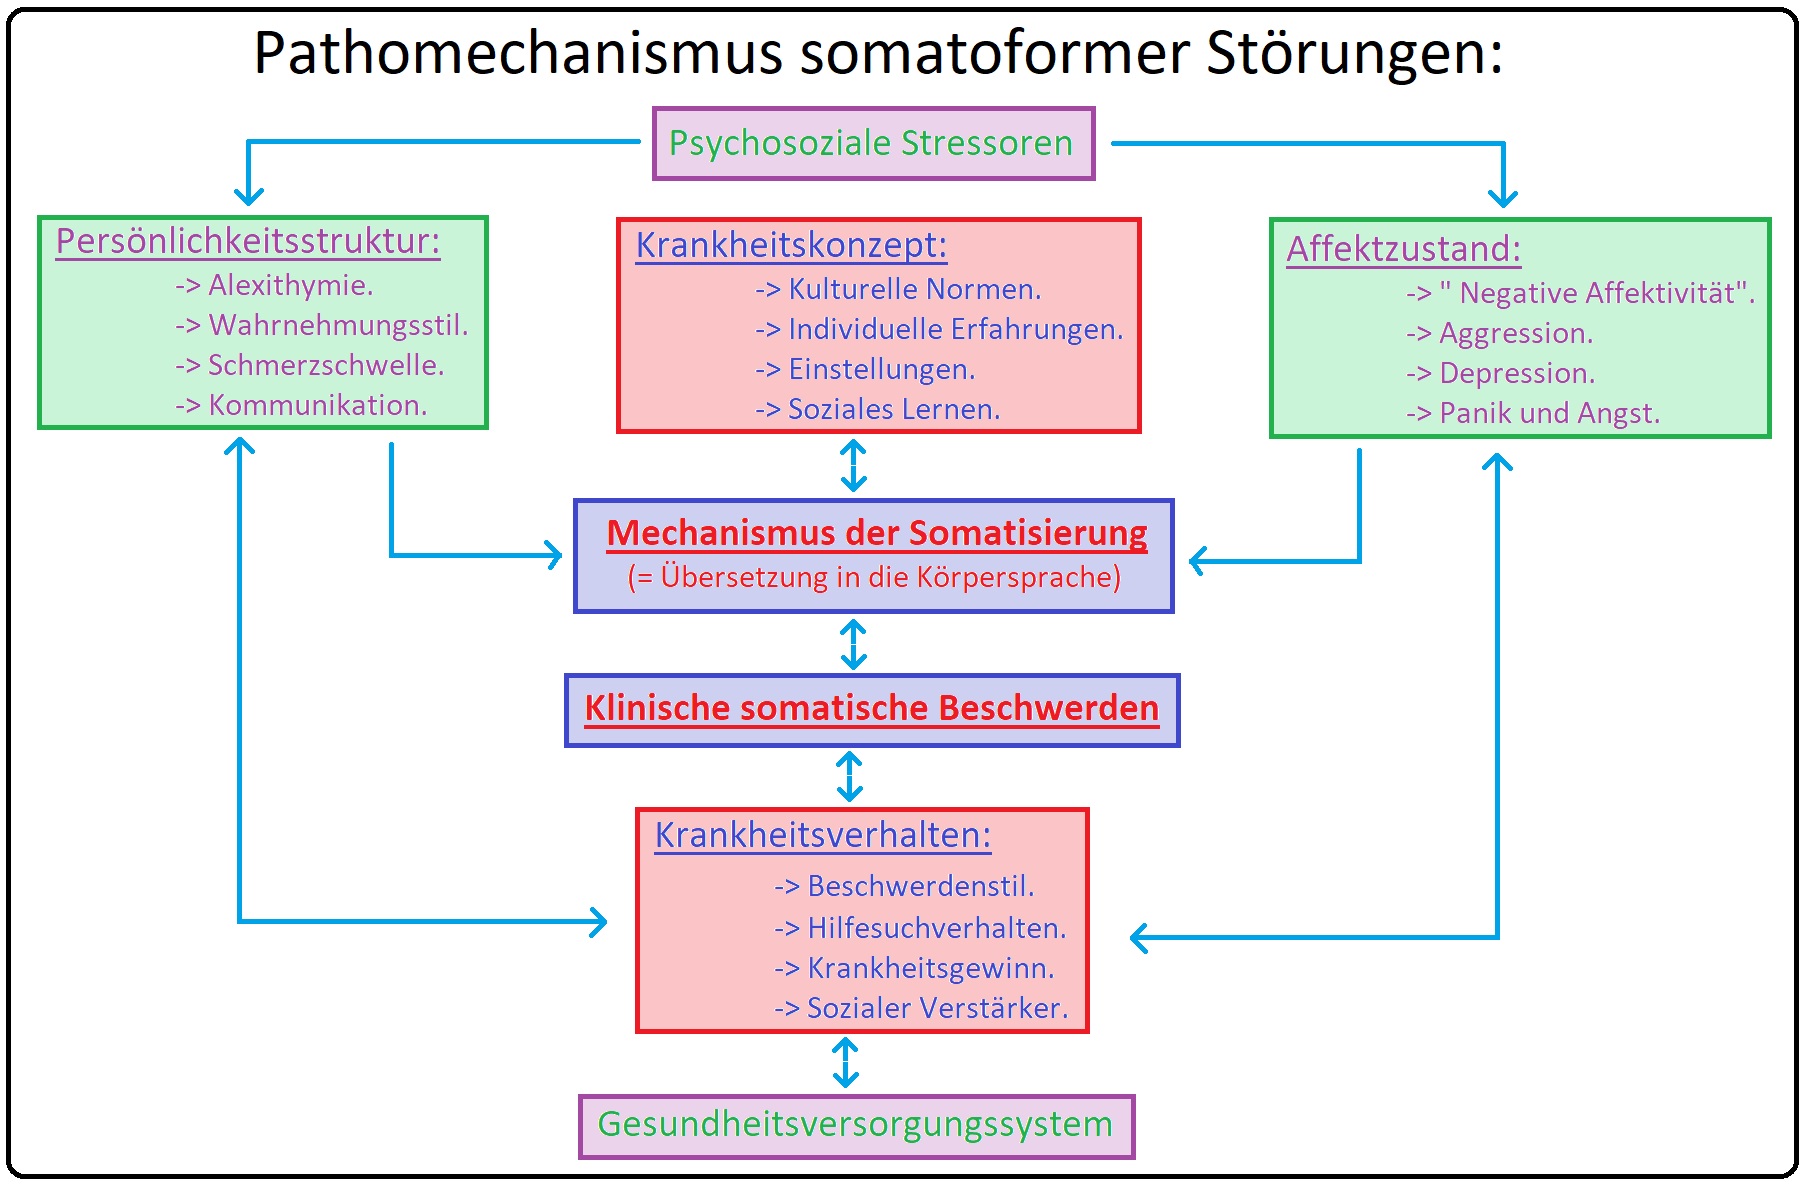 608 Pathomechanismus somtoformer Störungen